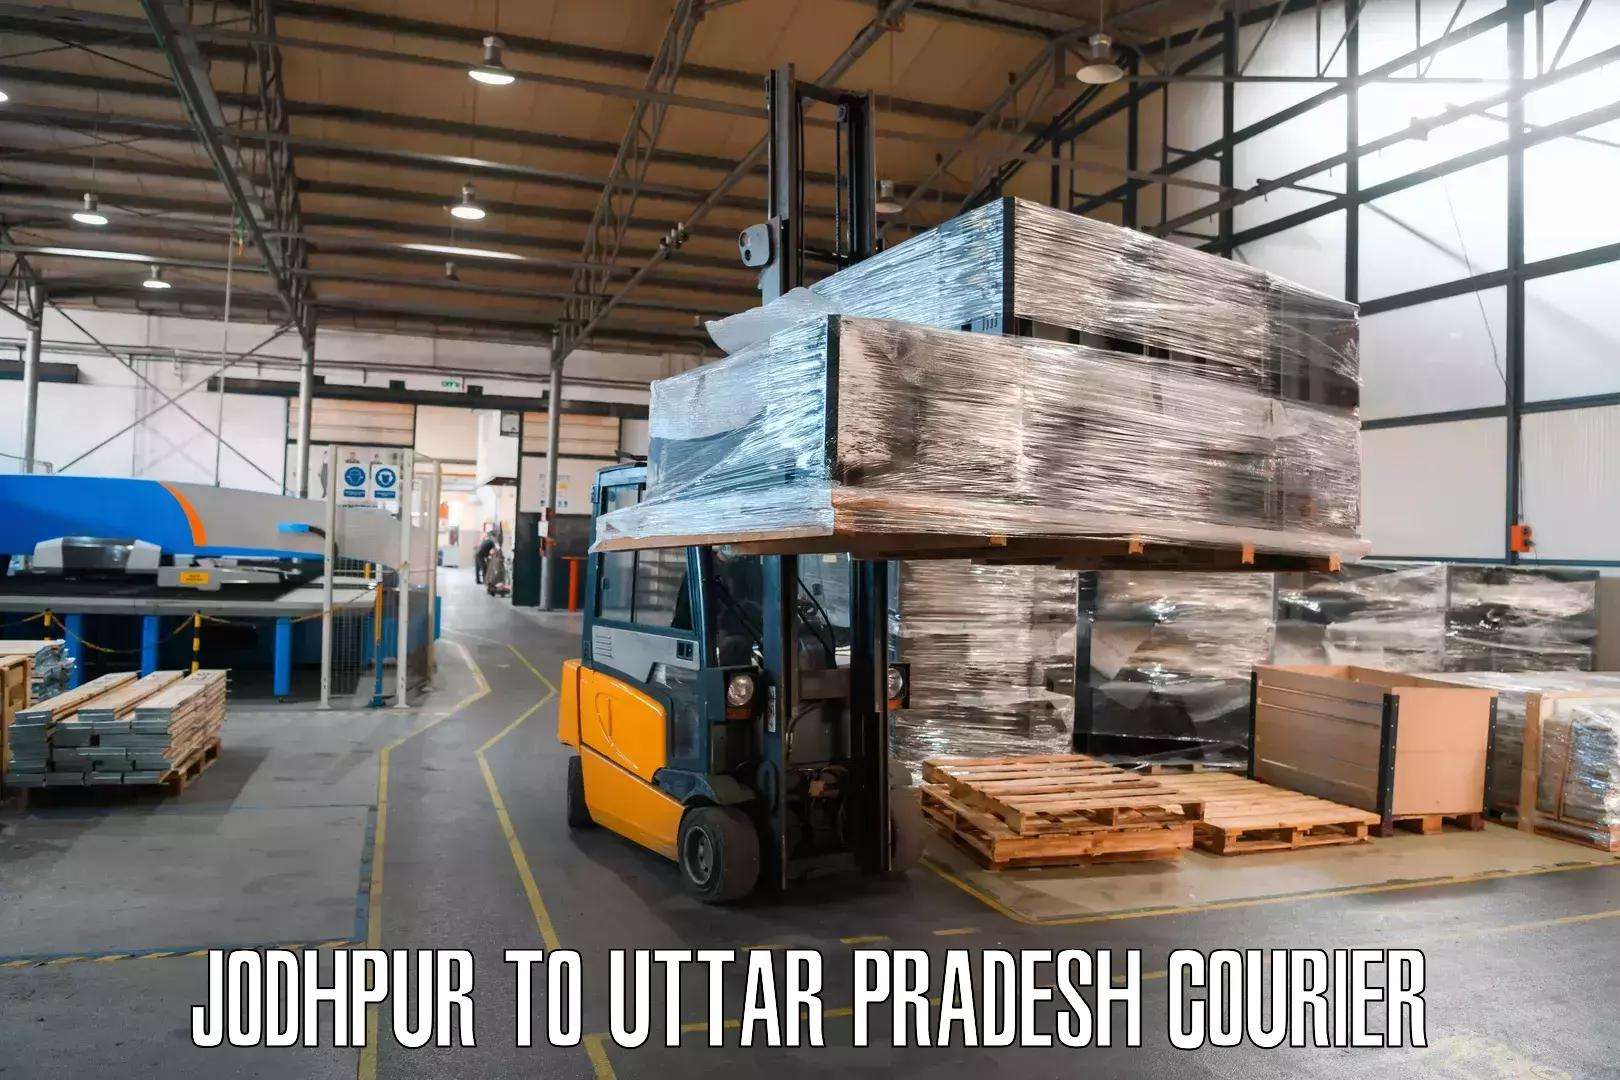 On-demand courier Jodhpur to Bijpur